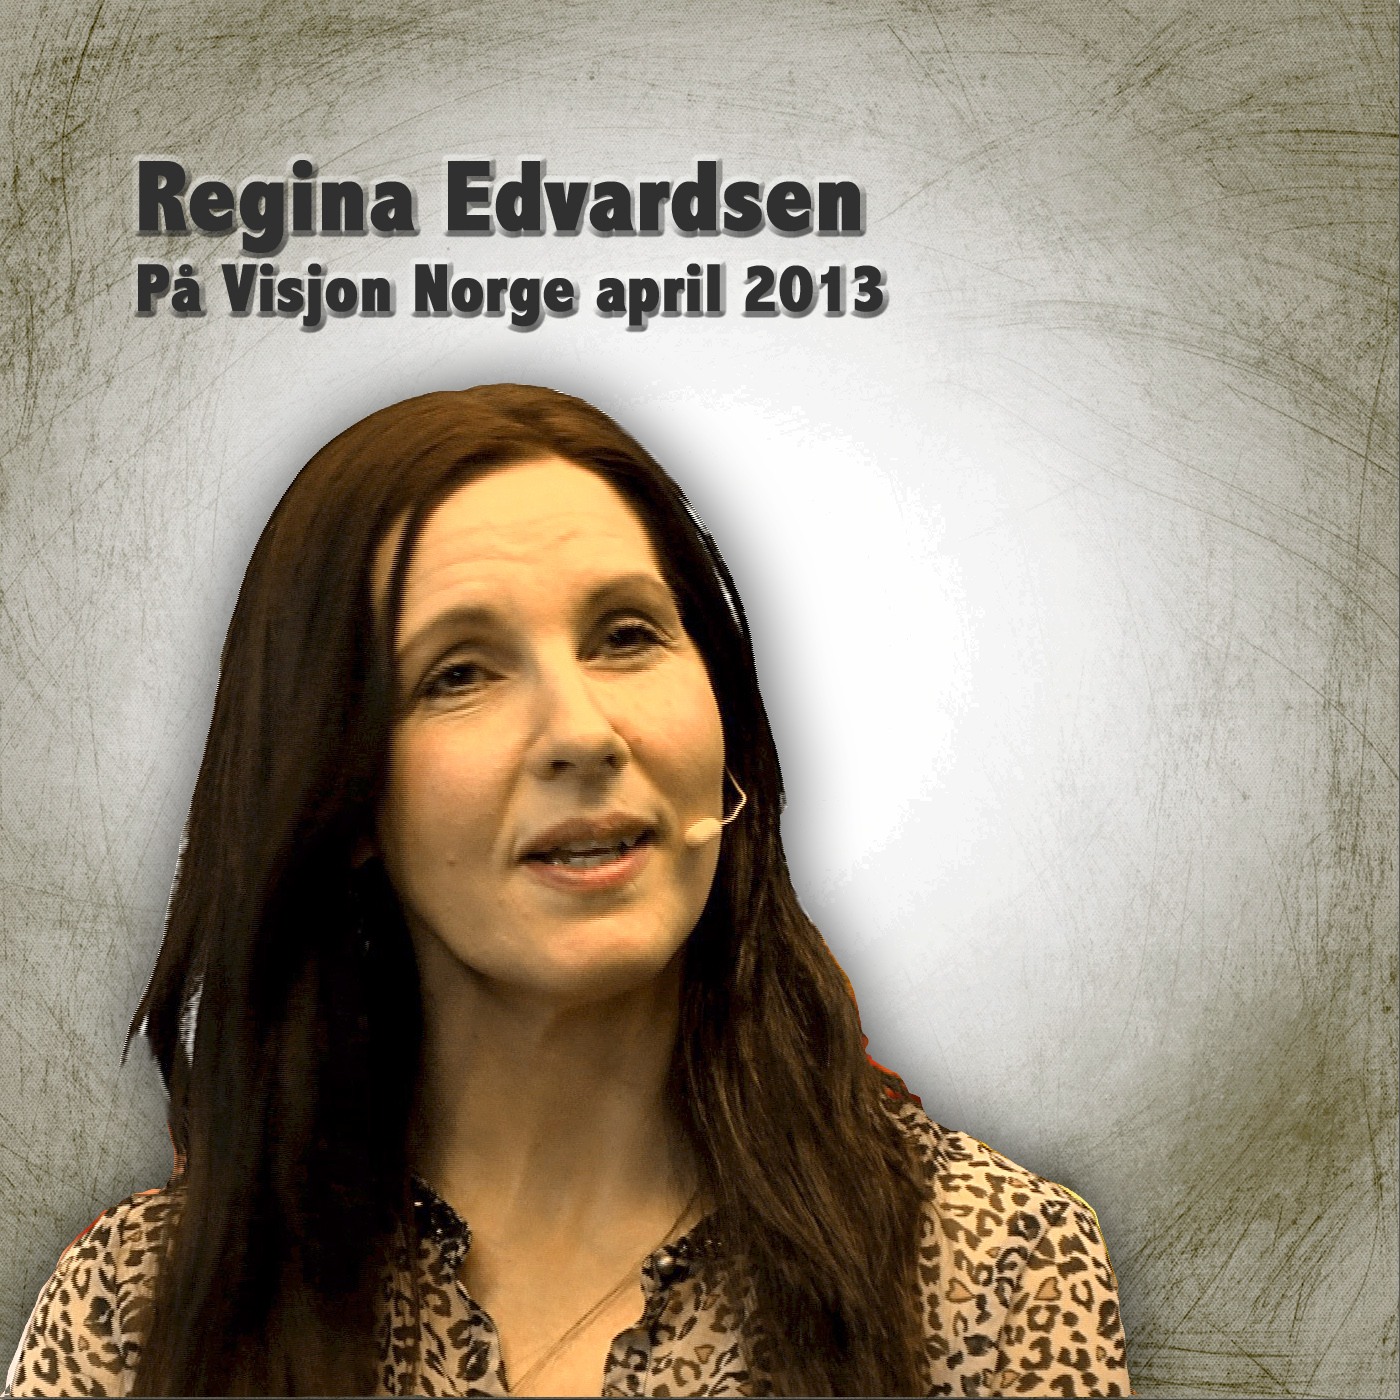 Regina Edvardsen